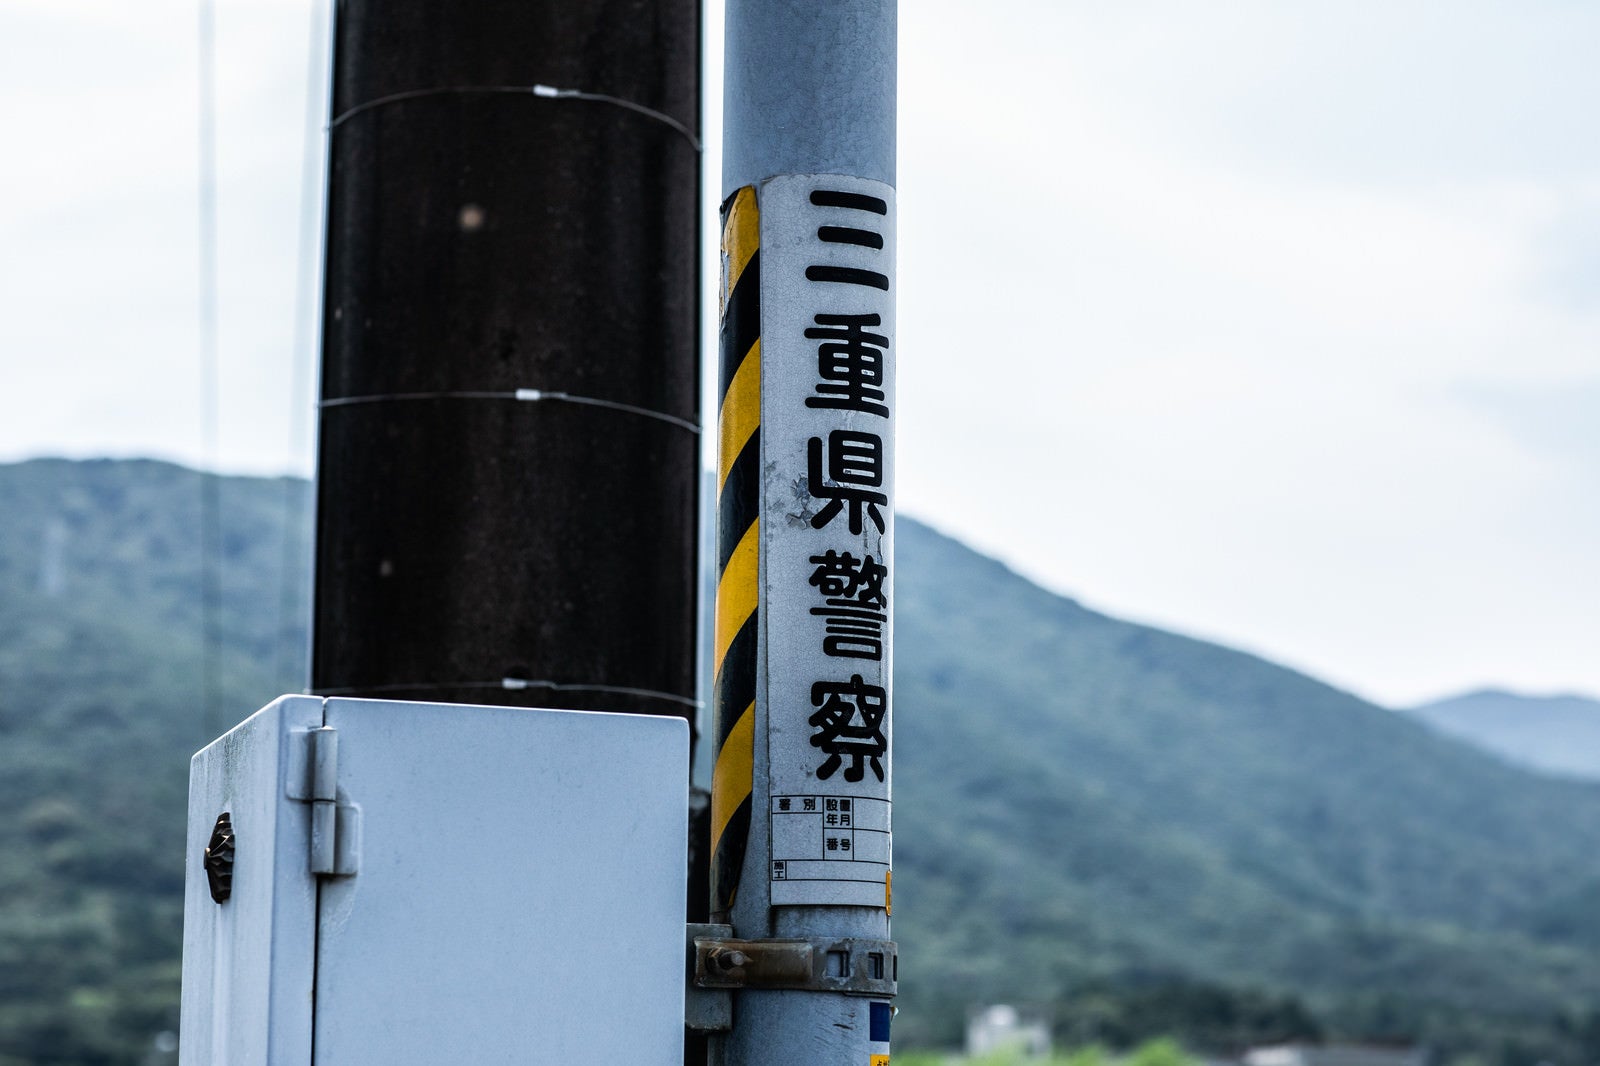 「電柱に貼られた三重県警察」の写真